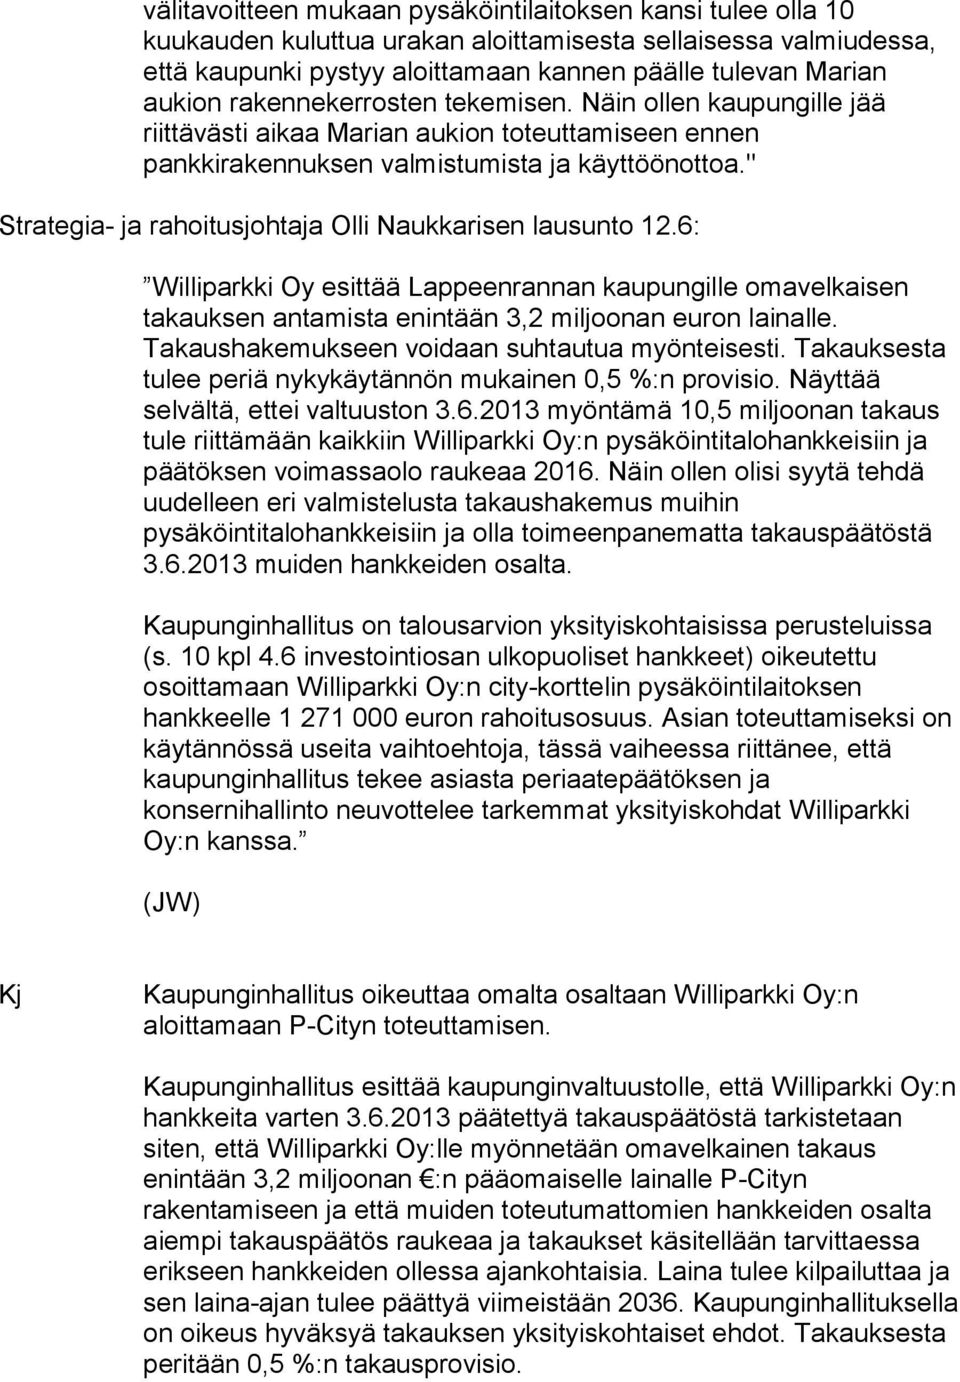 " Strategia- ja rahoitusjohtaja Olli Naukkarisen lausunto 12.6: Williparkki Oy esittää Lappeenrannan kaupungille omavelkaisen takauksen antamista enintään 3,2 miljoonan euron lainalle.